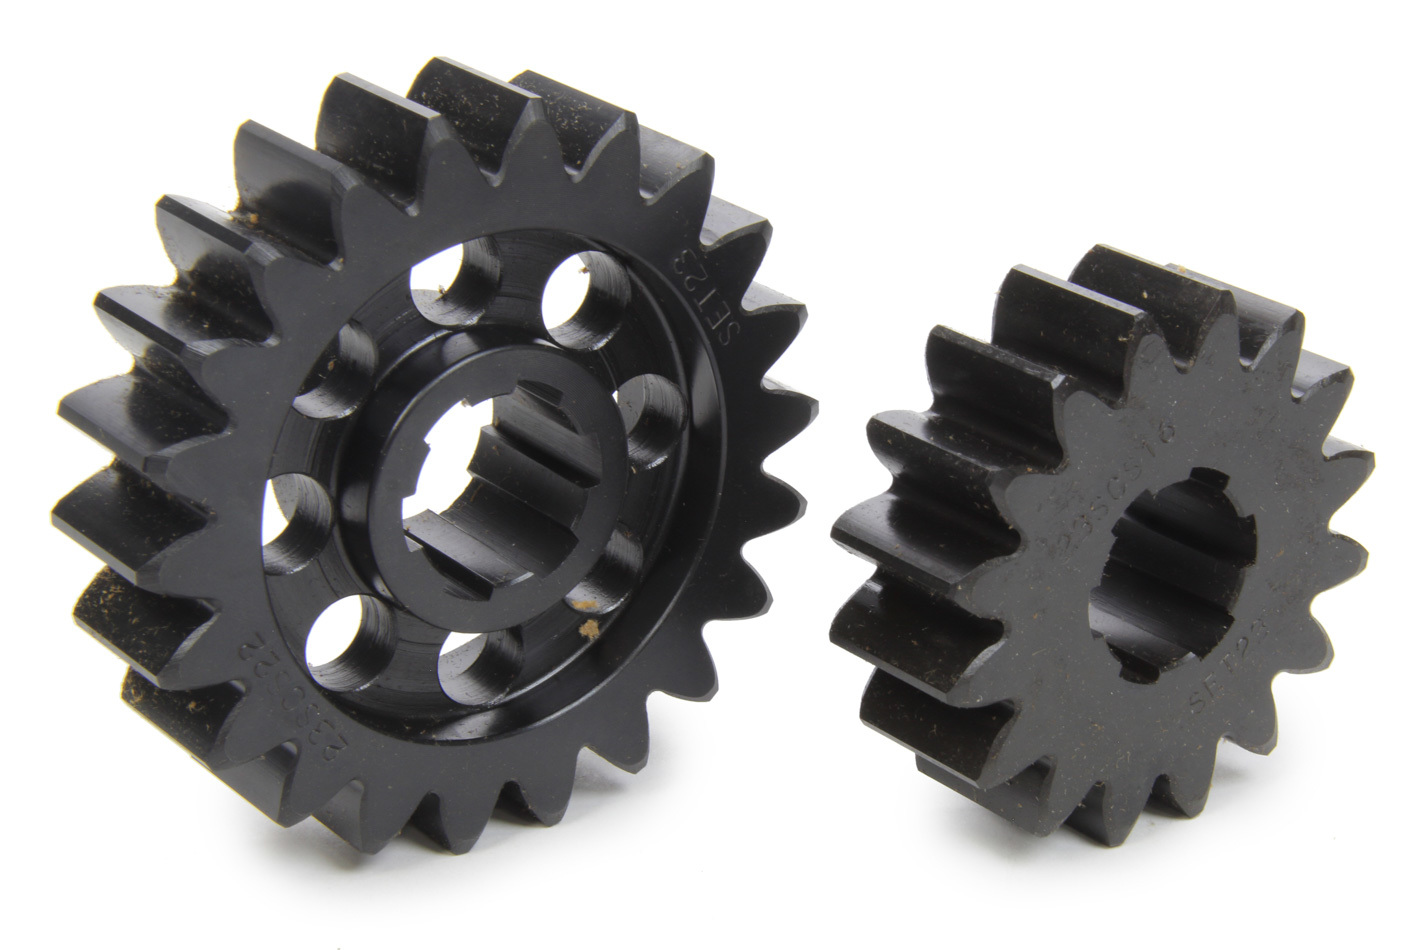 SCS Gears 623 - Quick Change Gear Set, Professional, Set 623, 6 Spline, 4.11 Ratio 2.99 / 5.65, 4.33 Ratio 3.15 / 5.95, Steel, Each